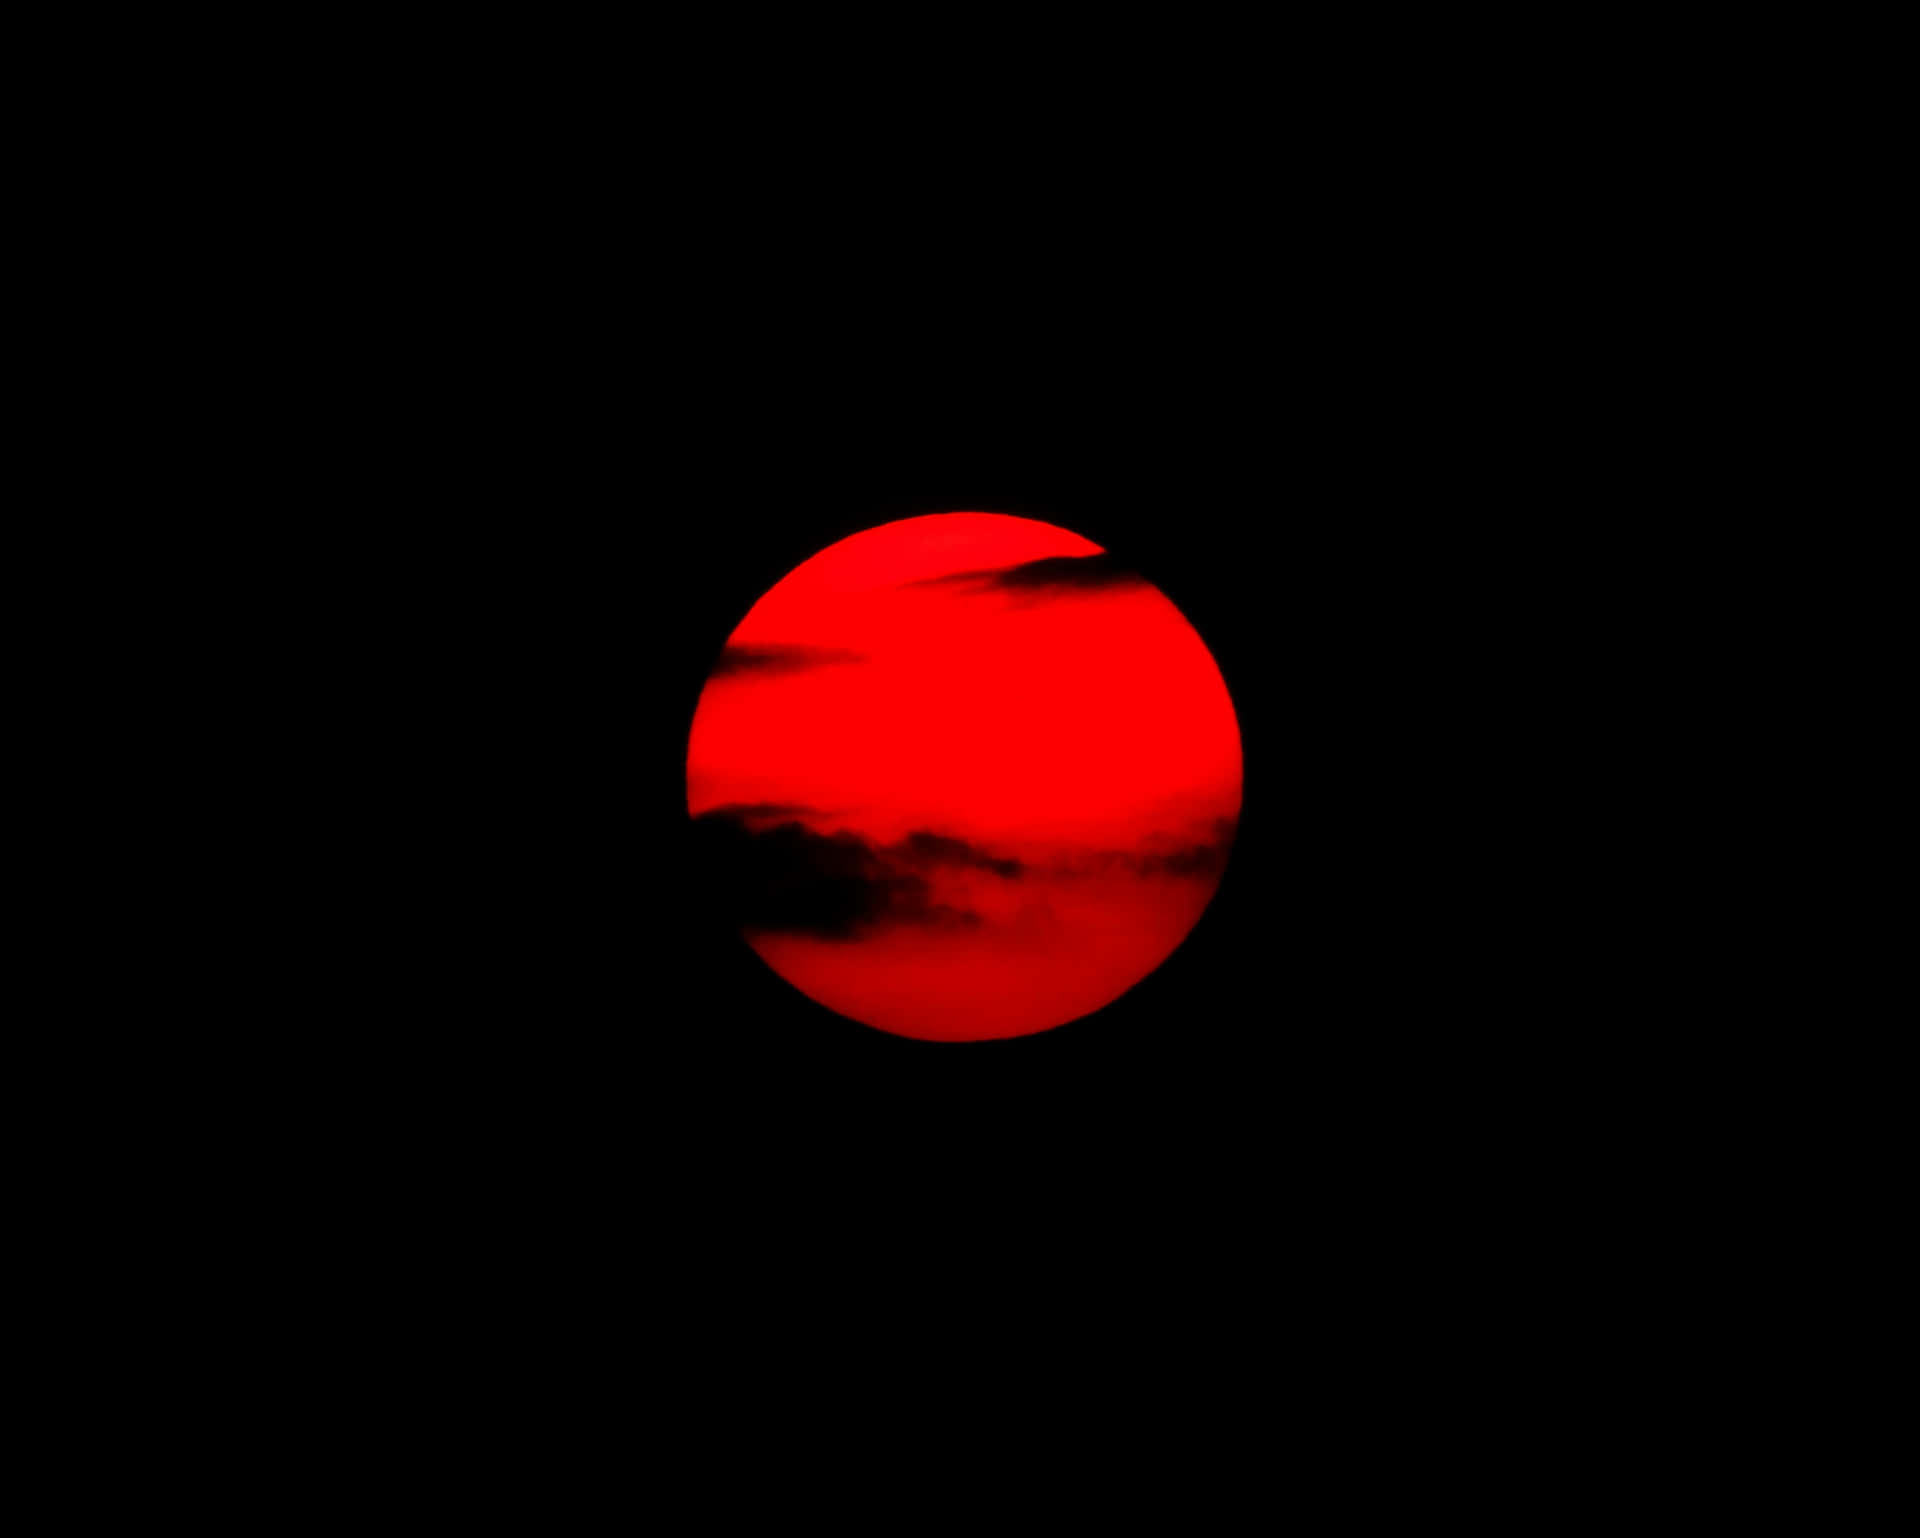 Lunar_ Eclipse_ Red_ Moon Wallpaper